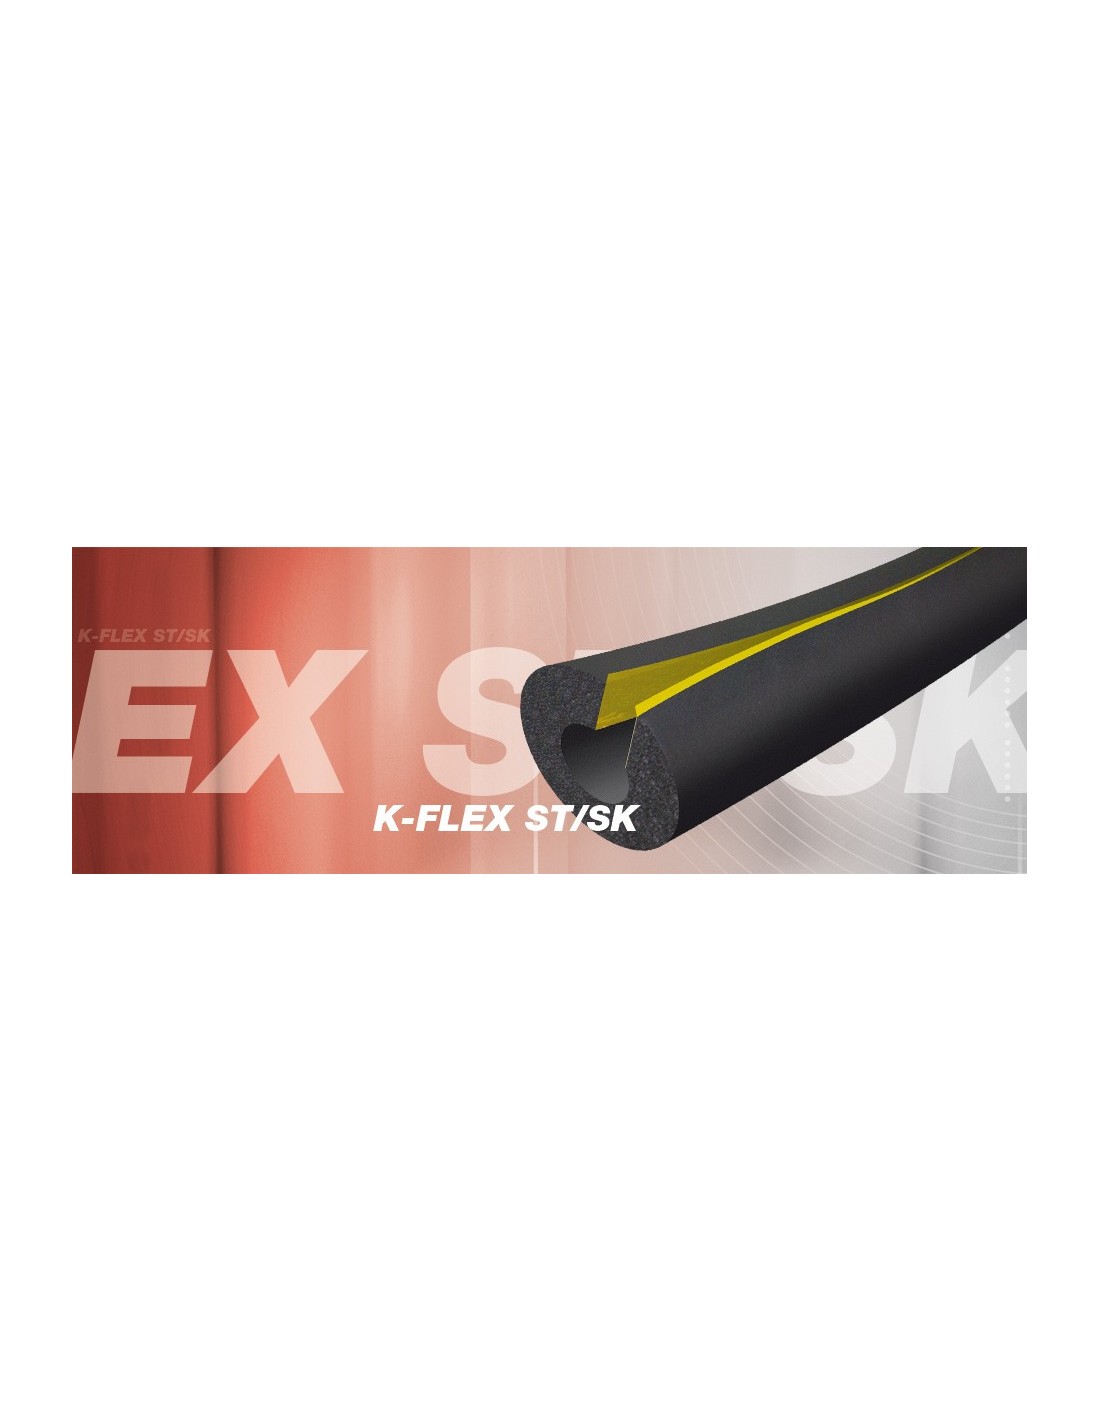 K-FLEX - Coquilla ST 19 aislante para climatización Modelo 006